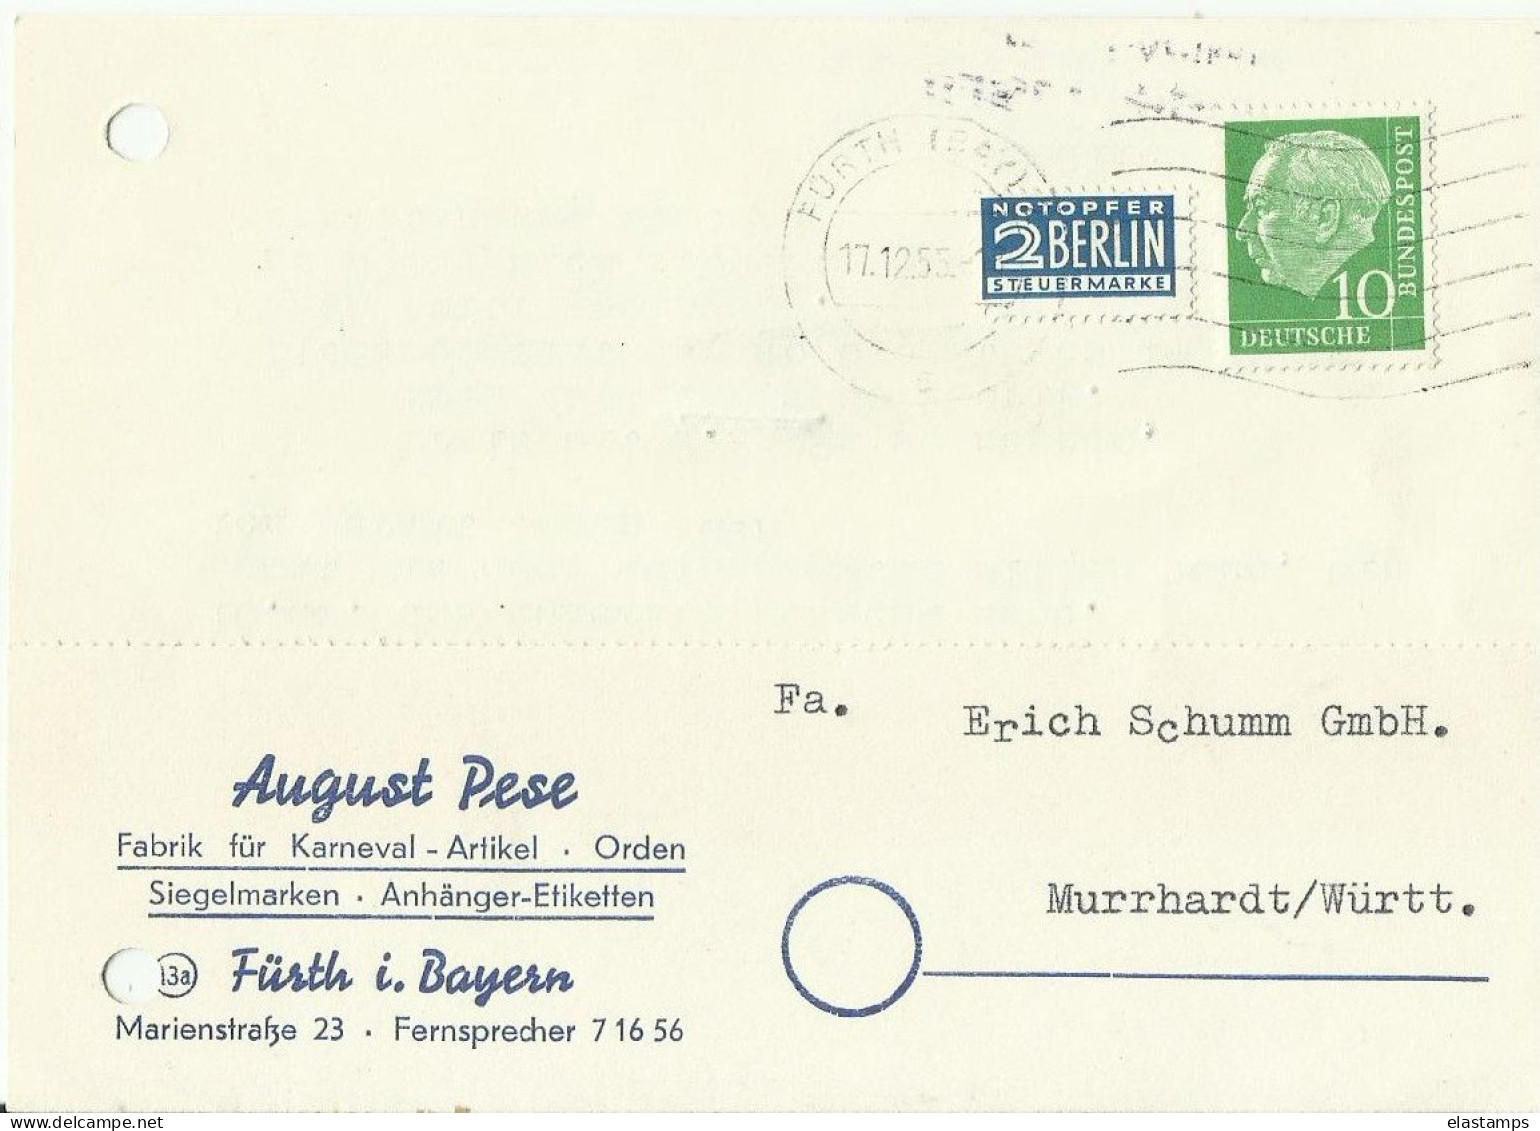 BDR GS 1955 - Postcards - Mint